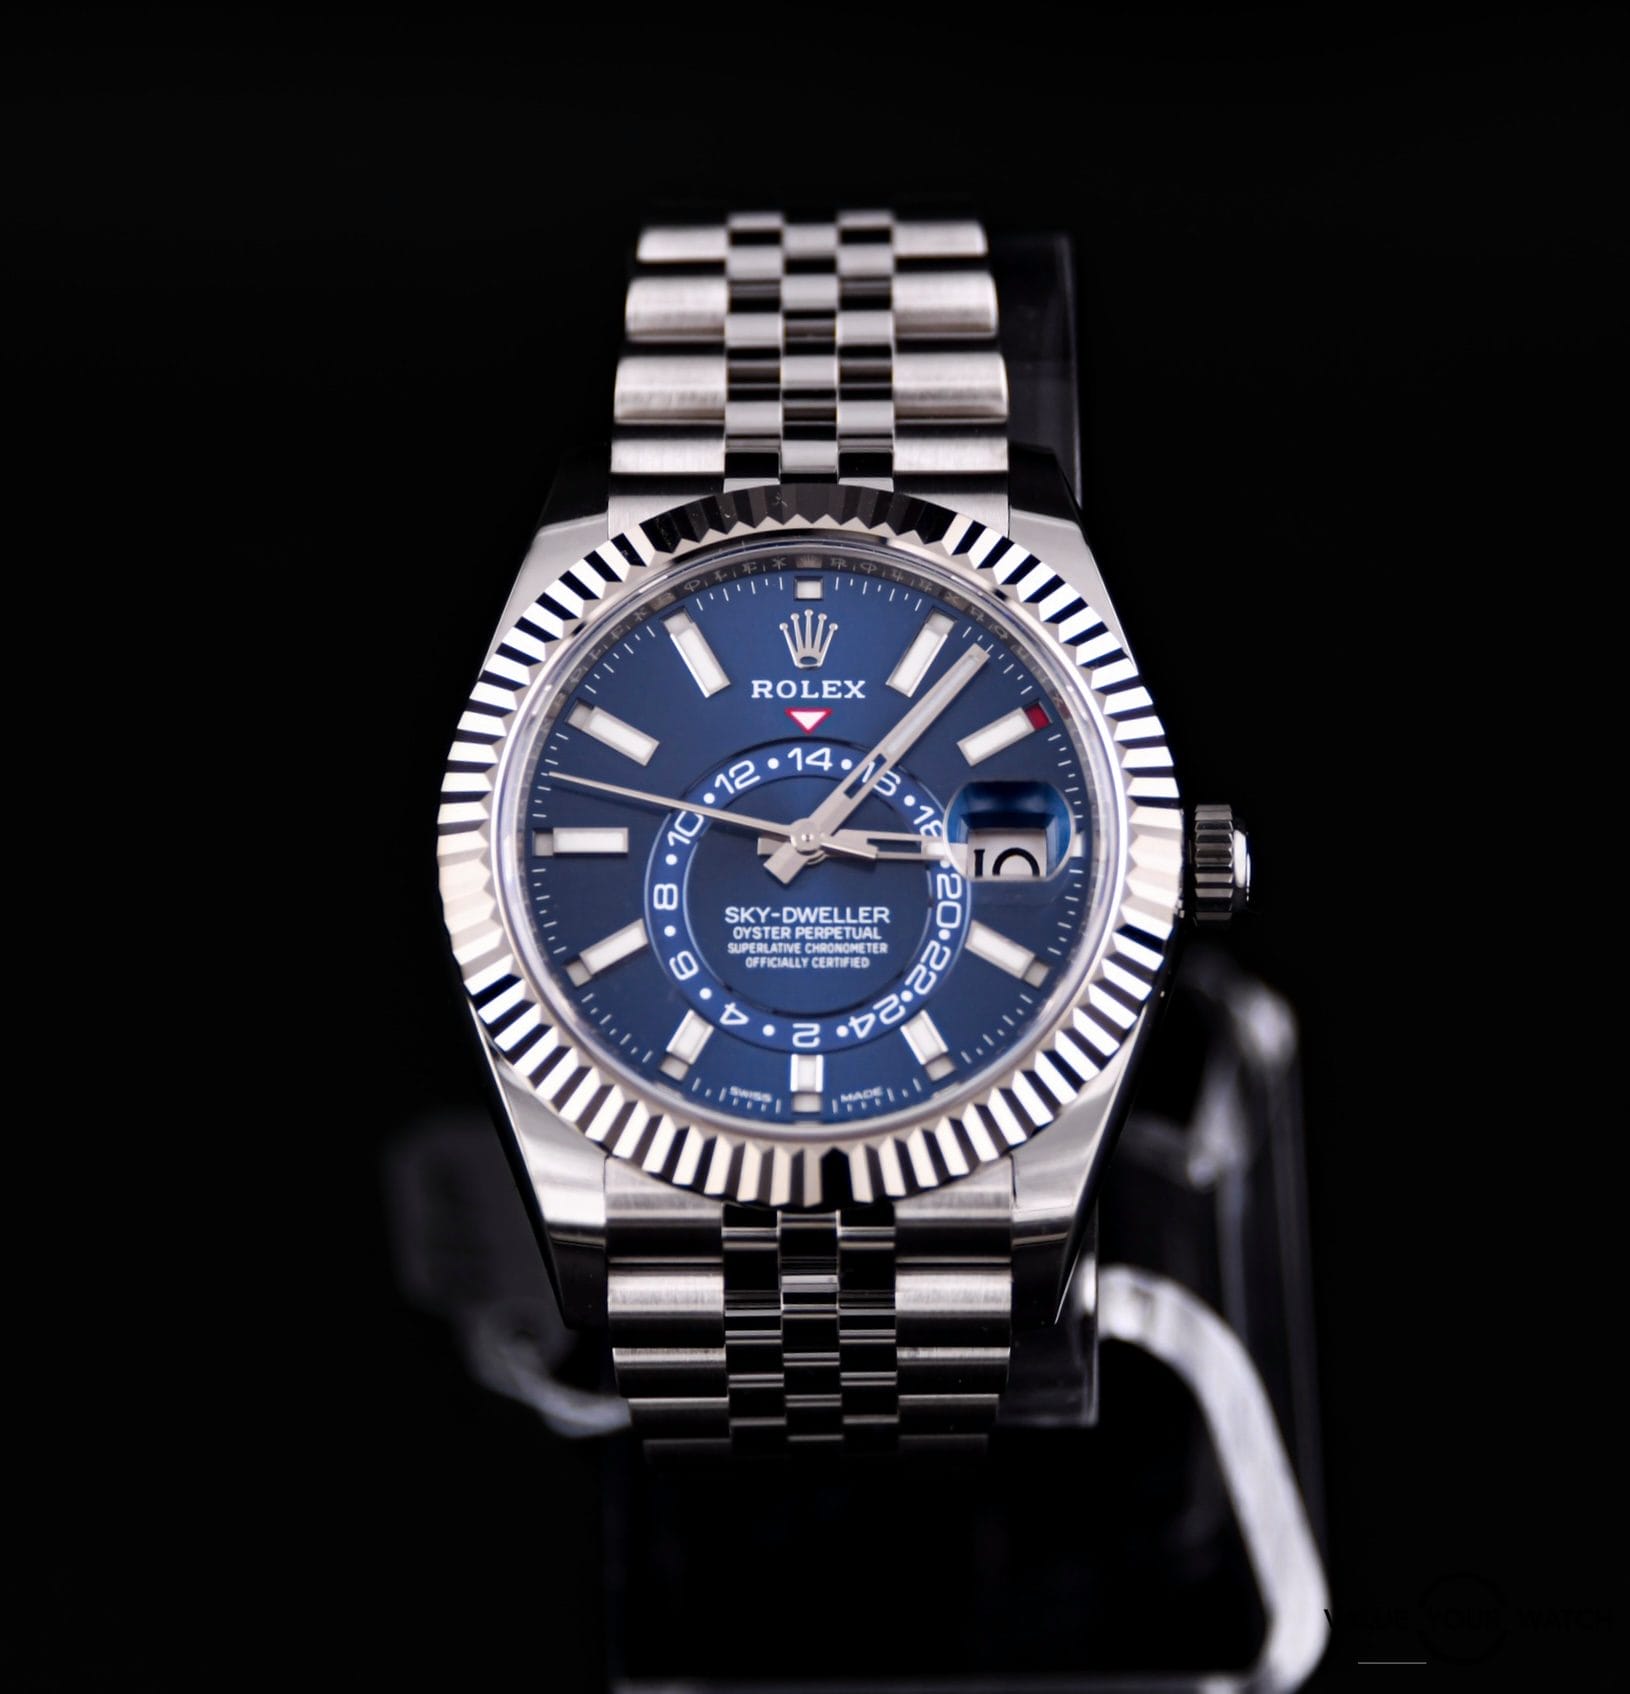 Rolex Sky Dwelller blue dial w stainless steel jubilee bracelet 326934 w/ box & papers